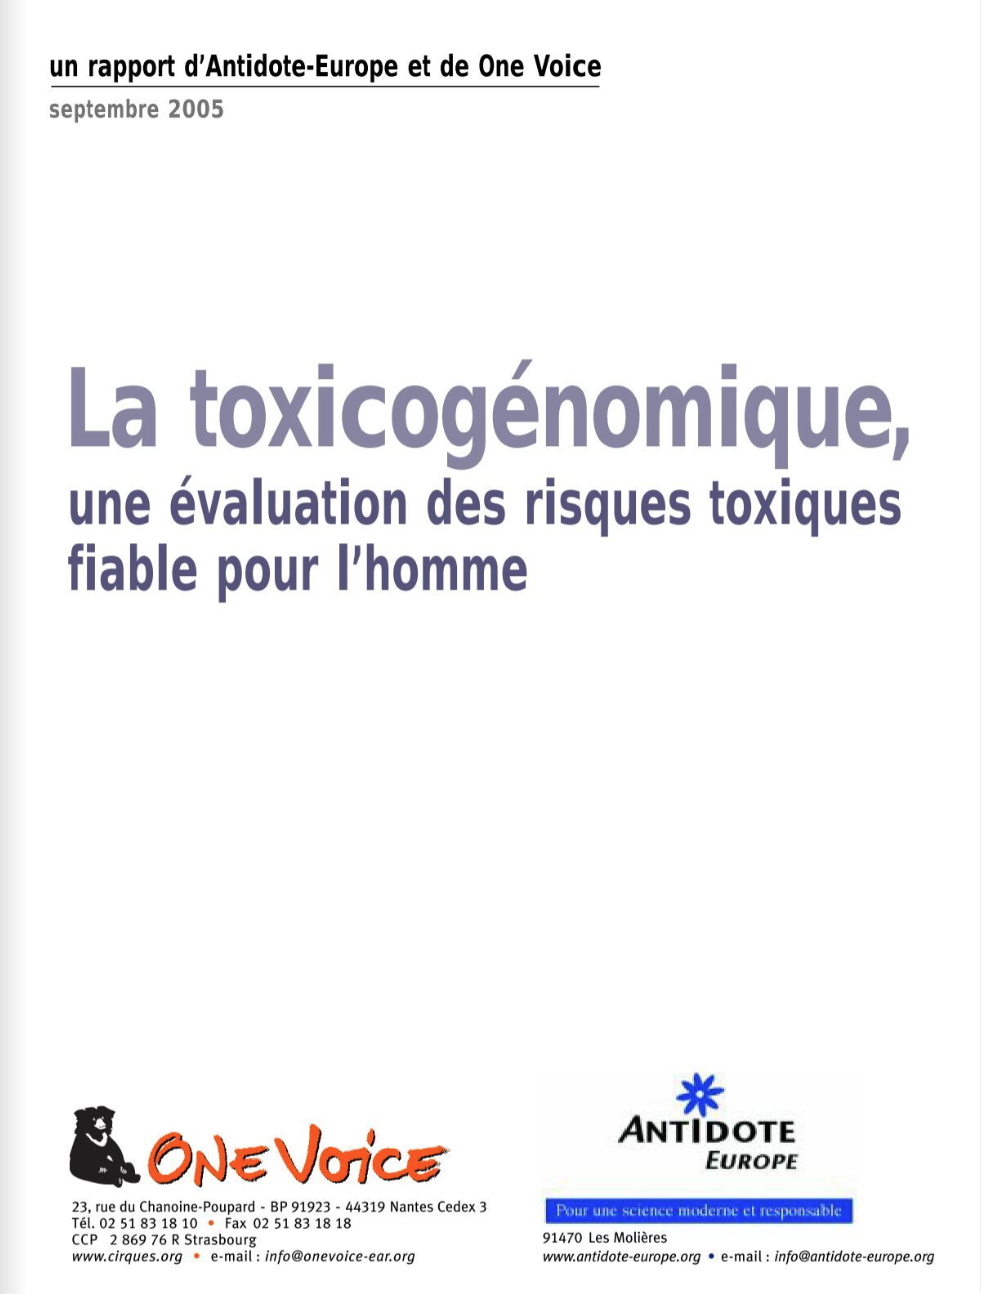 La toxicogénomique, une évaluation des risques toxiques fiable pour l'homme